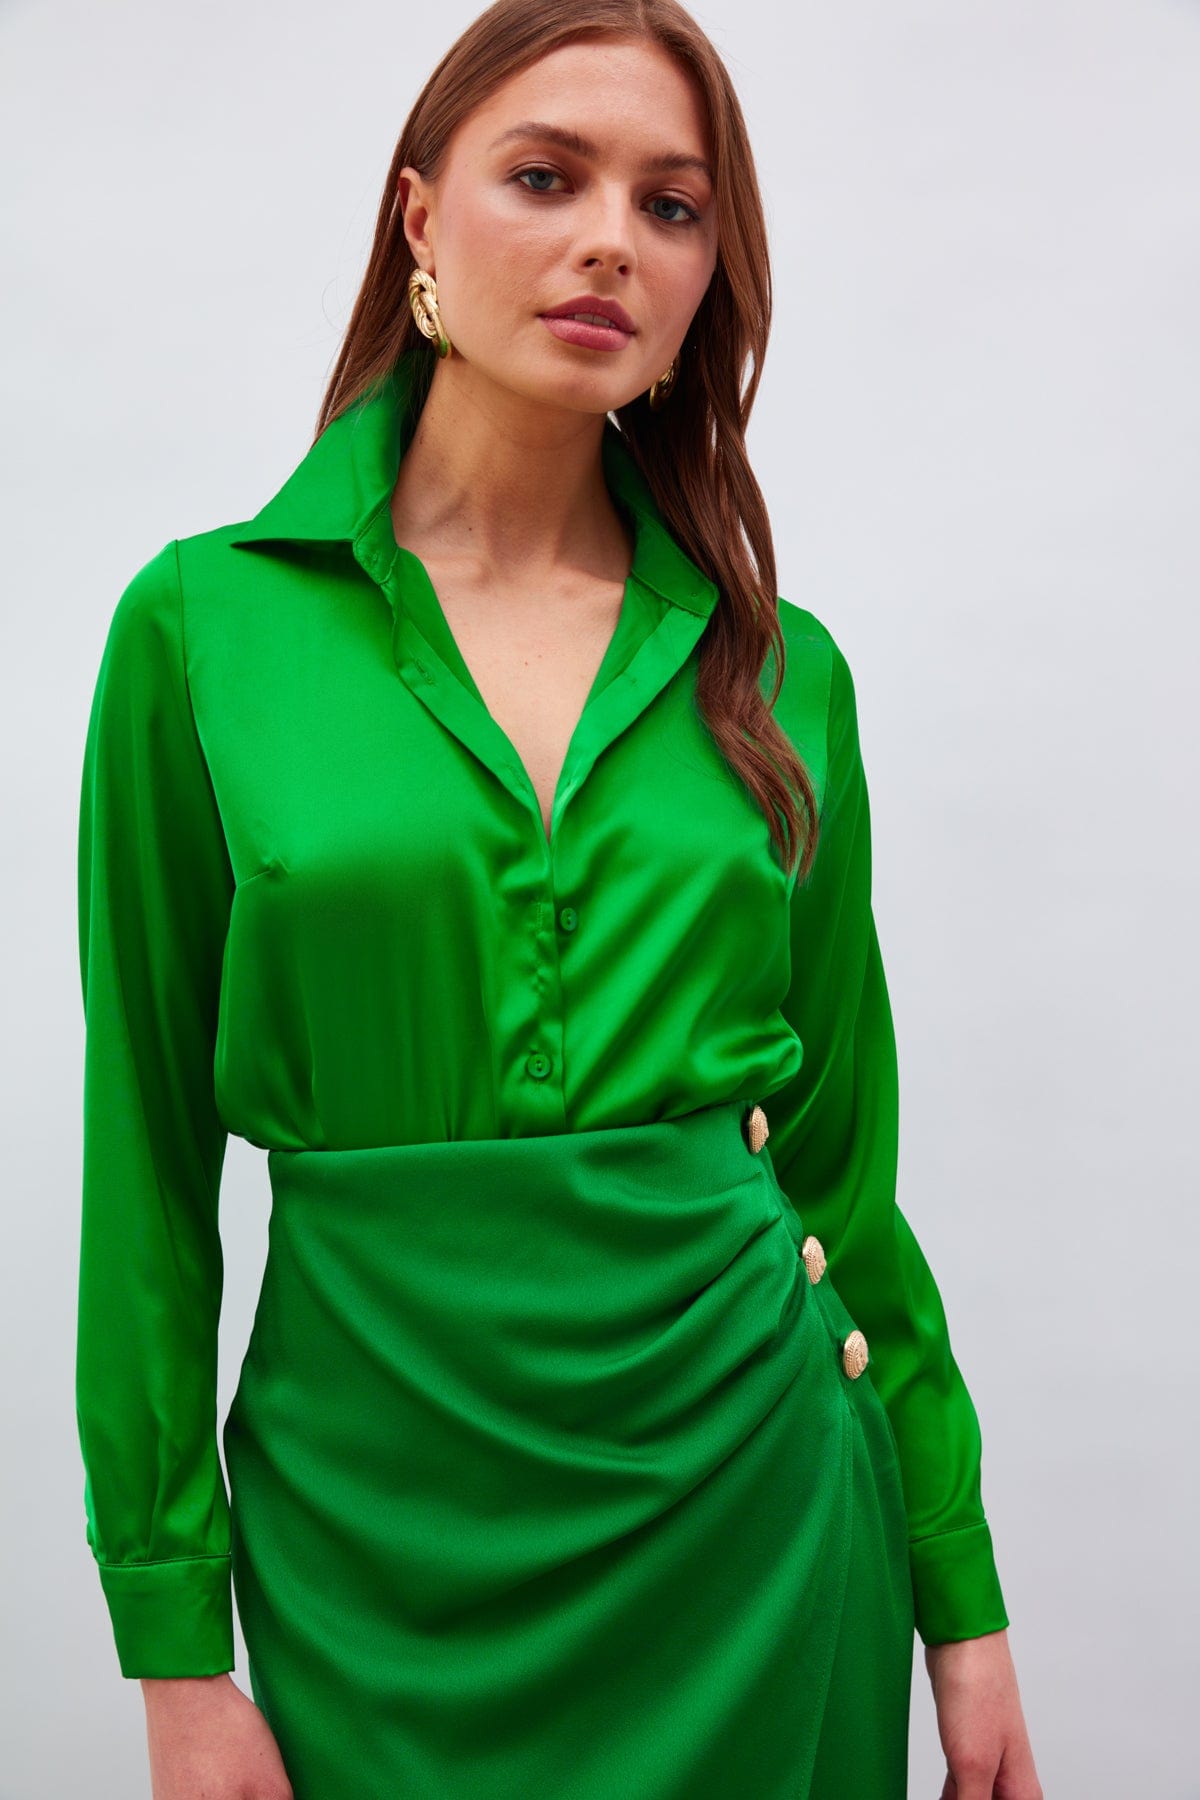 Shirt Collar Satin Bodysuit Blouse Dark Green / S / 4 ZEFASH